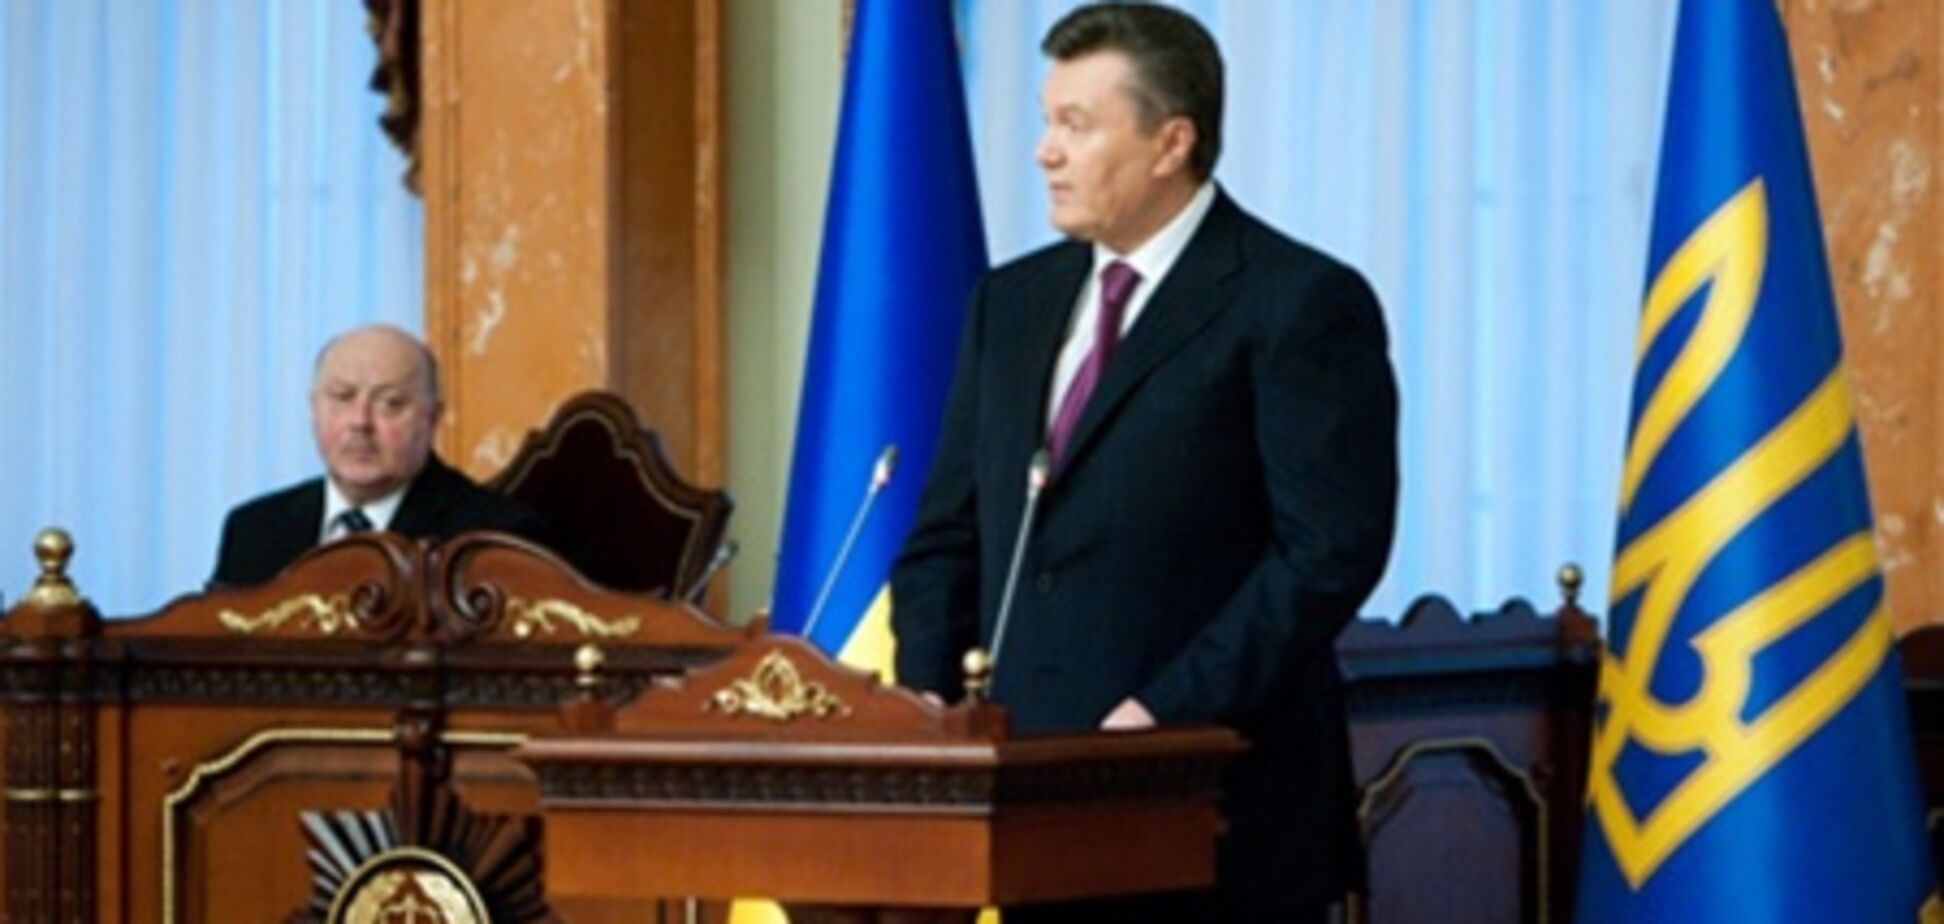 Янукович поcтавіл підпис під законом про декриміналізацію